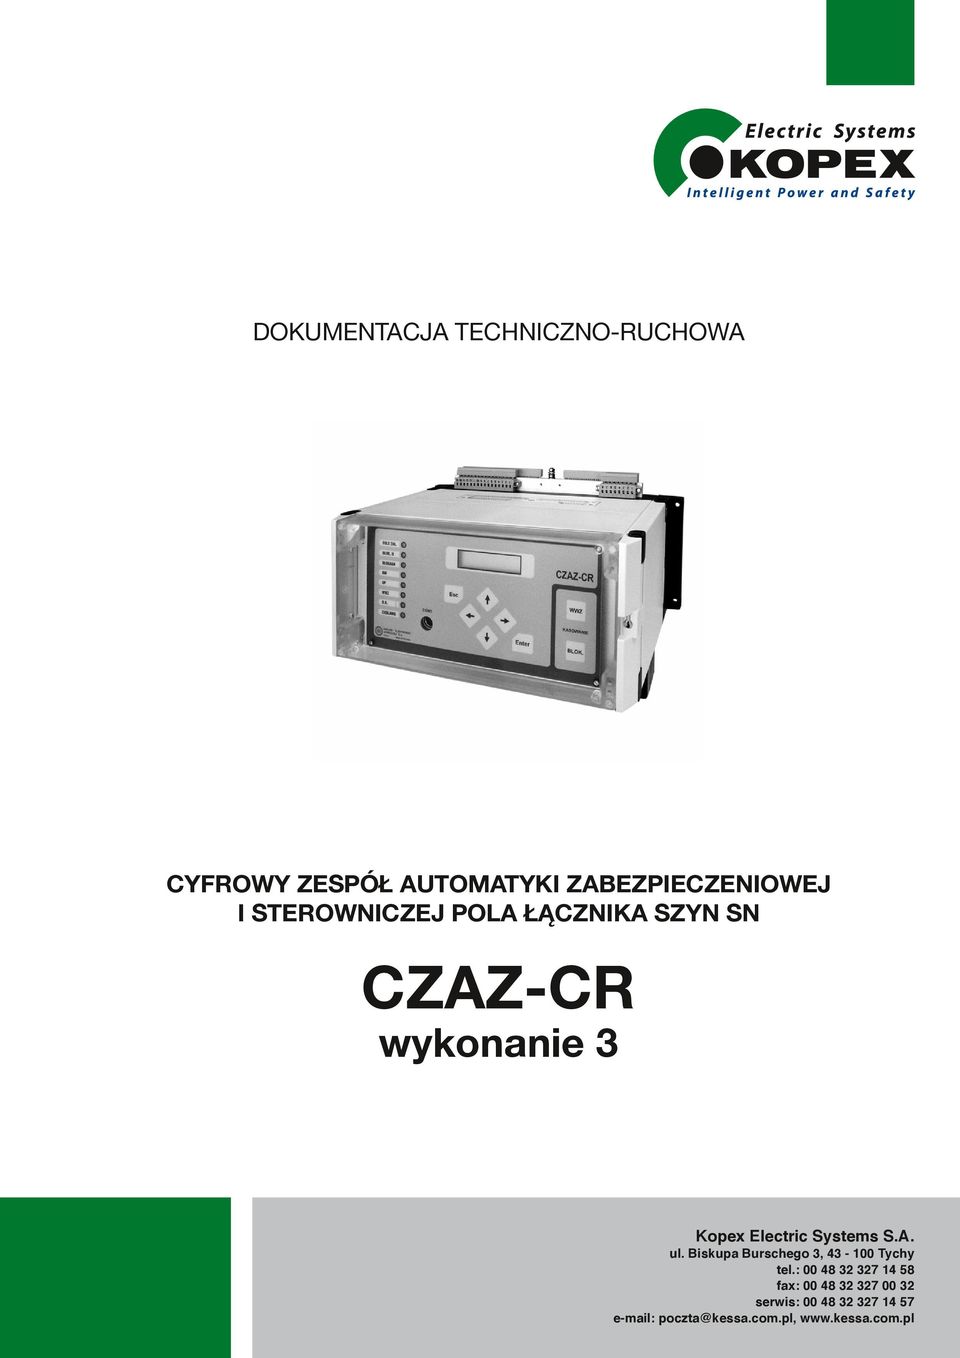 SN CZAZ-CR wykonanie 3 CZAZ CR ZEG-E Kopex Electric Systems S.A. ul. Biskupa Burschego 3, 43-100 Tychy tel.